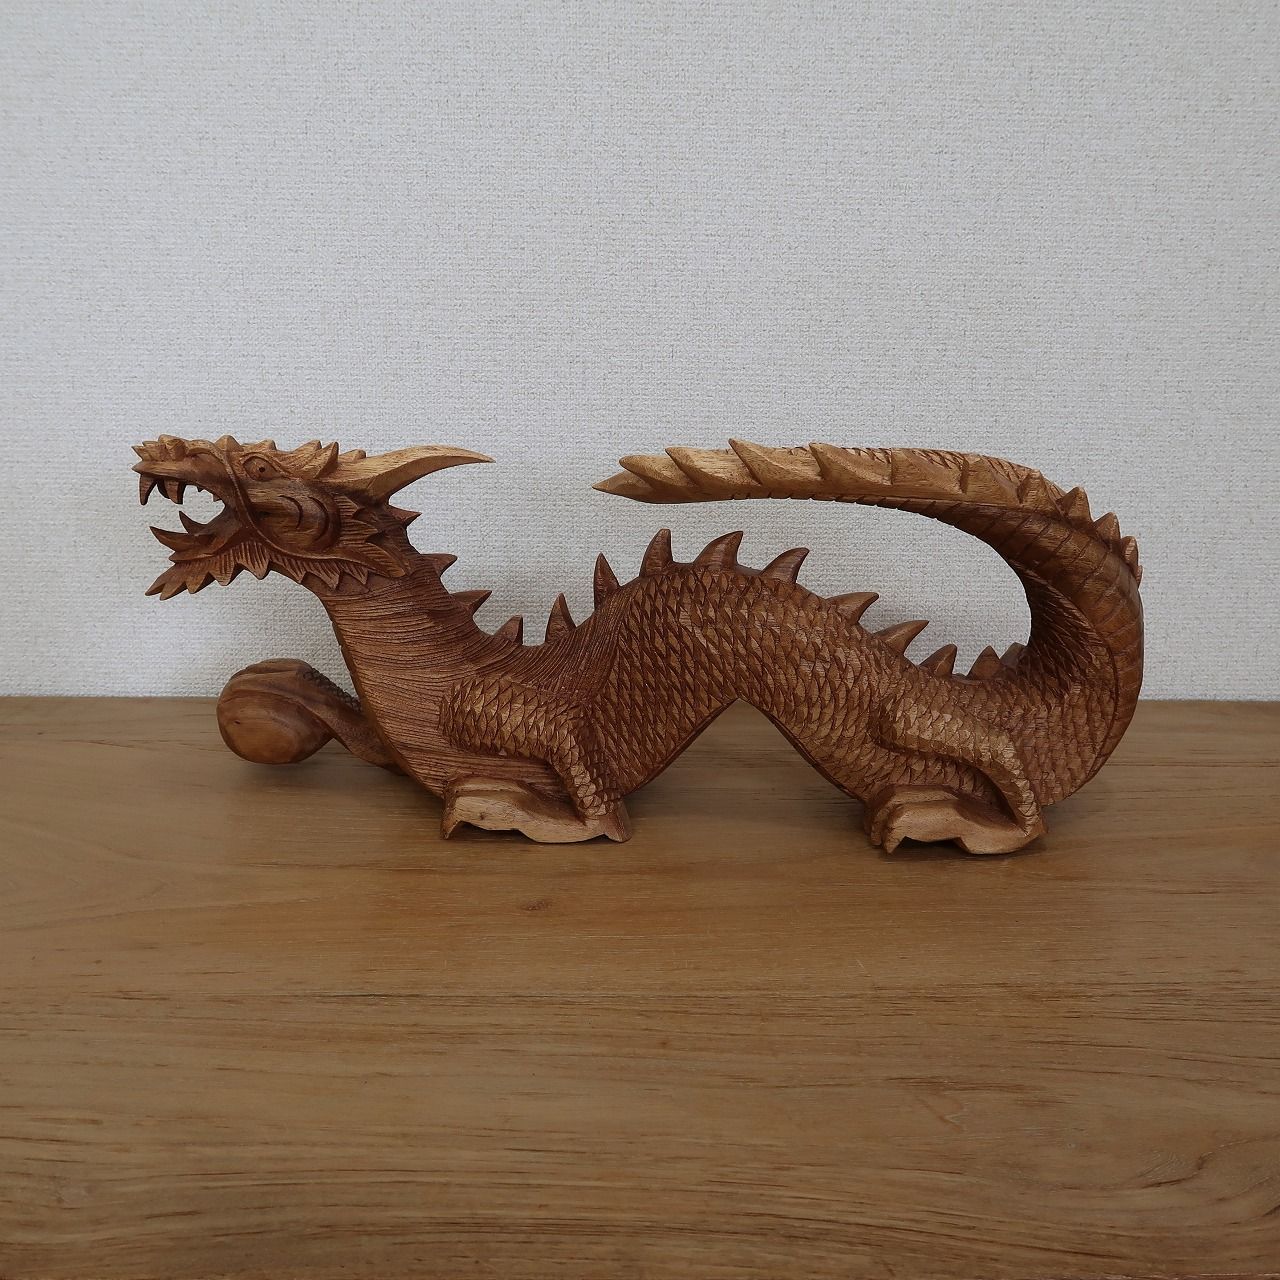 ドラゴンの木彫り 龍の木彫り スワール無垢材 左向き 50cm 竜の木彫り